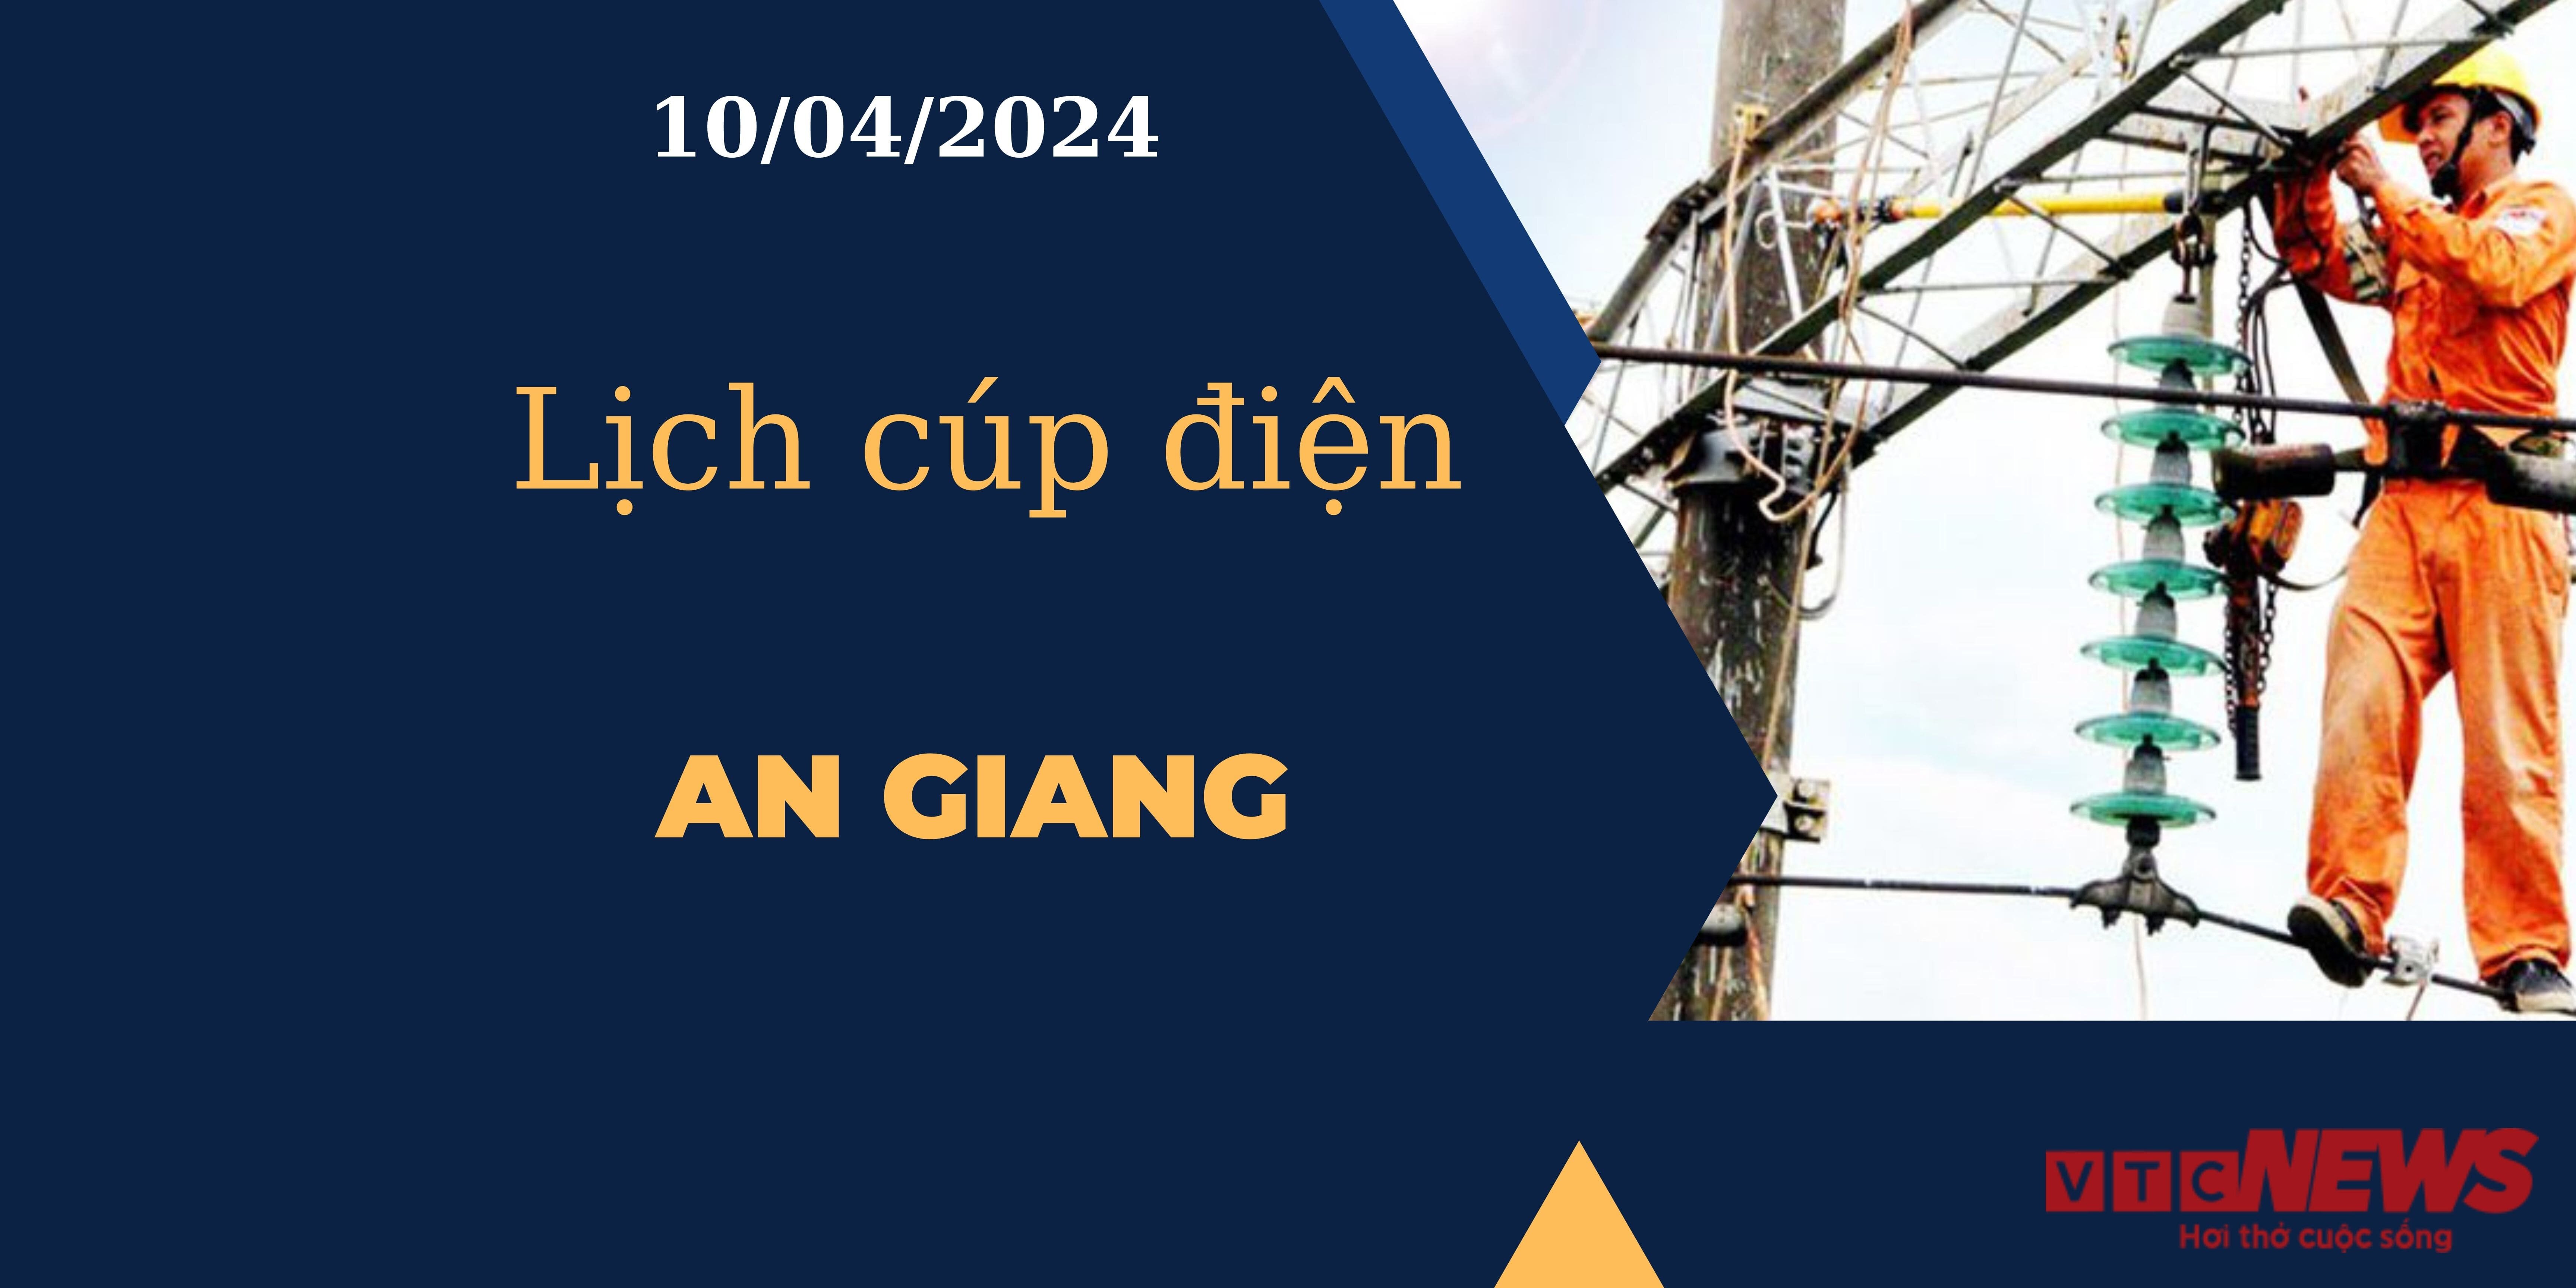 Lịch cúp điện hôm nay tại An Giang ngày 10/04/2024